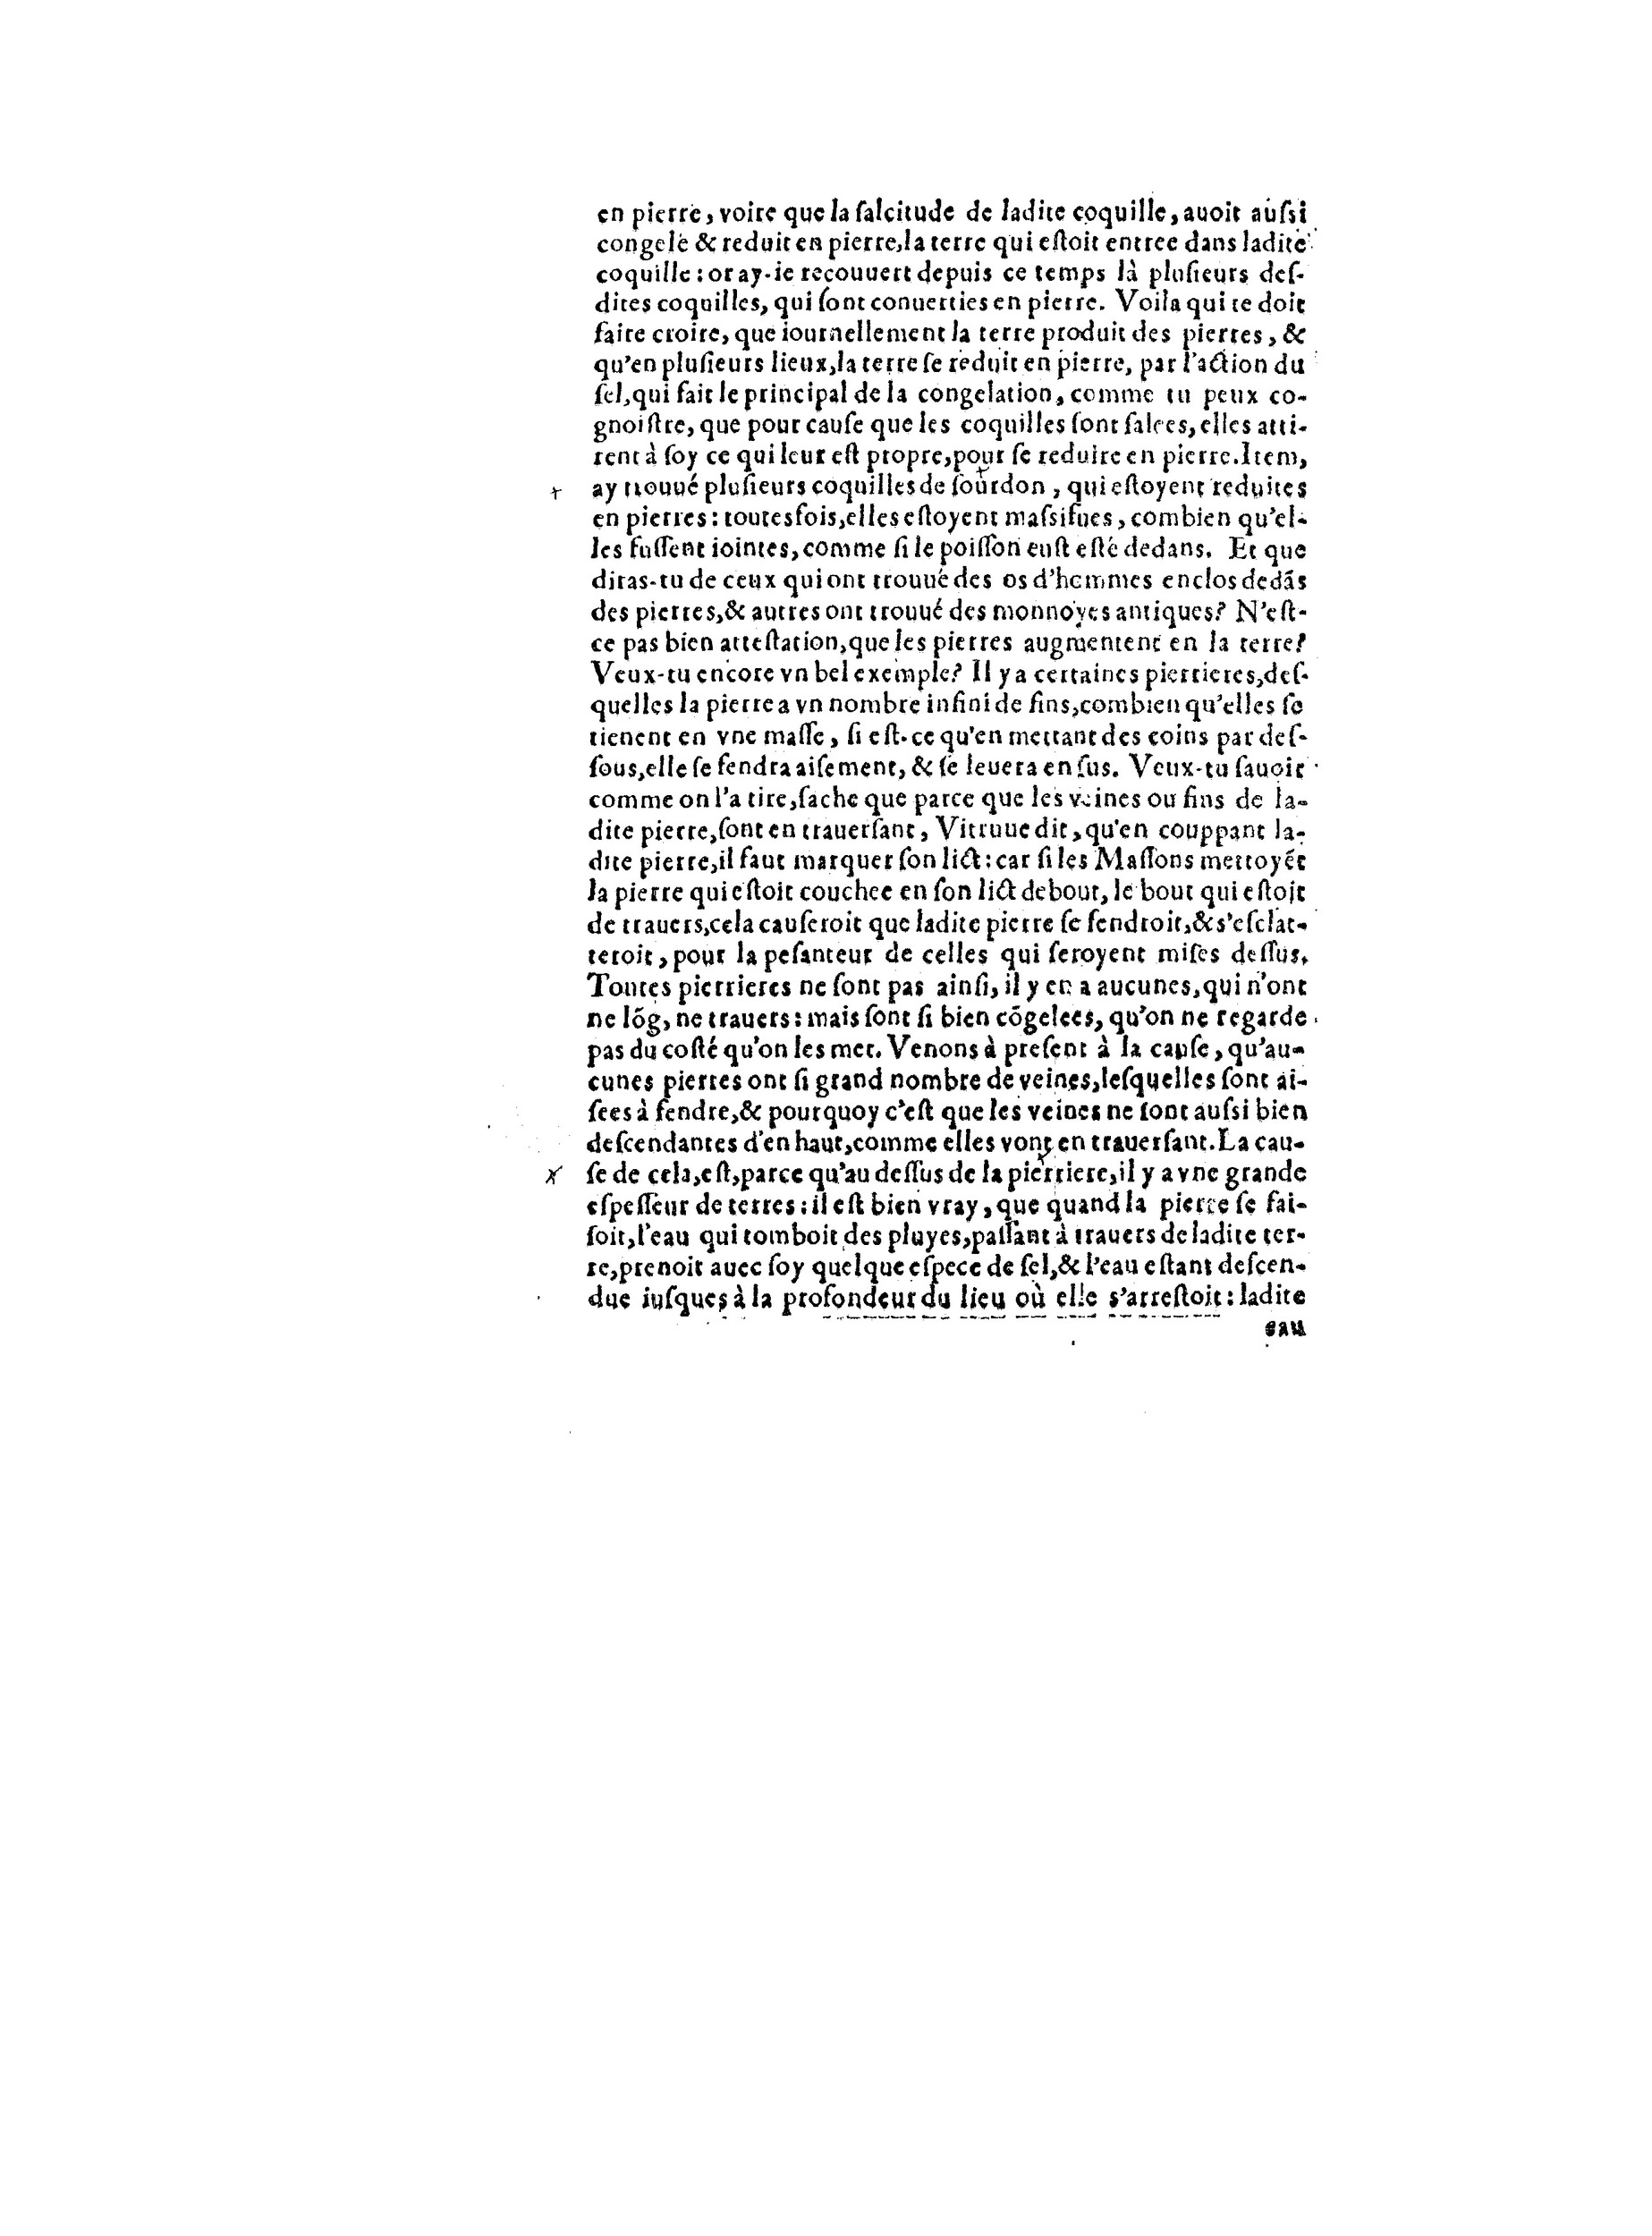 1563 Recepte veritable Berton_BNF_Page_043.jpg